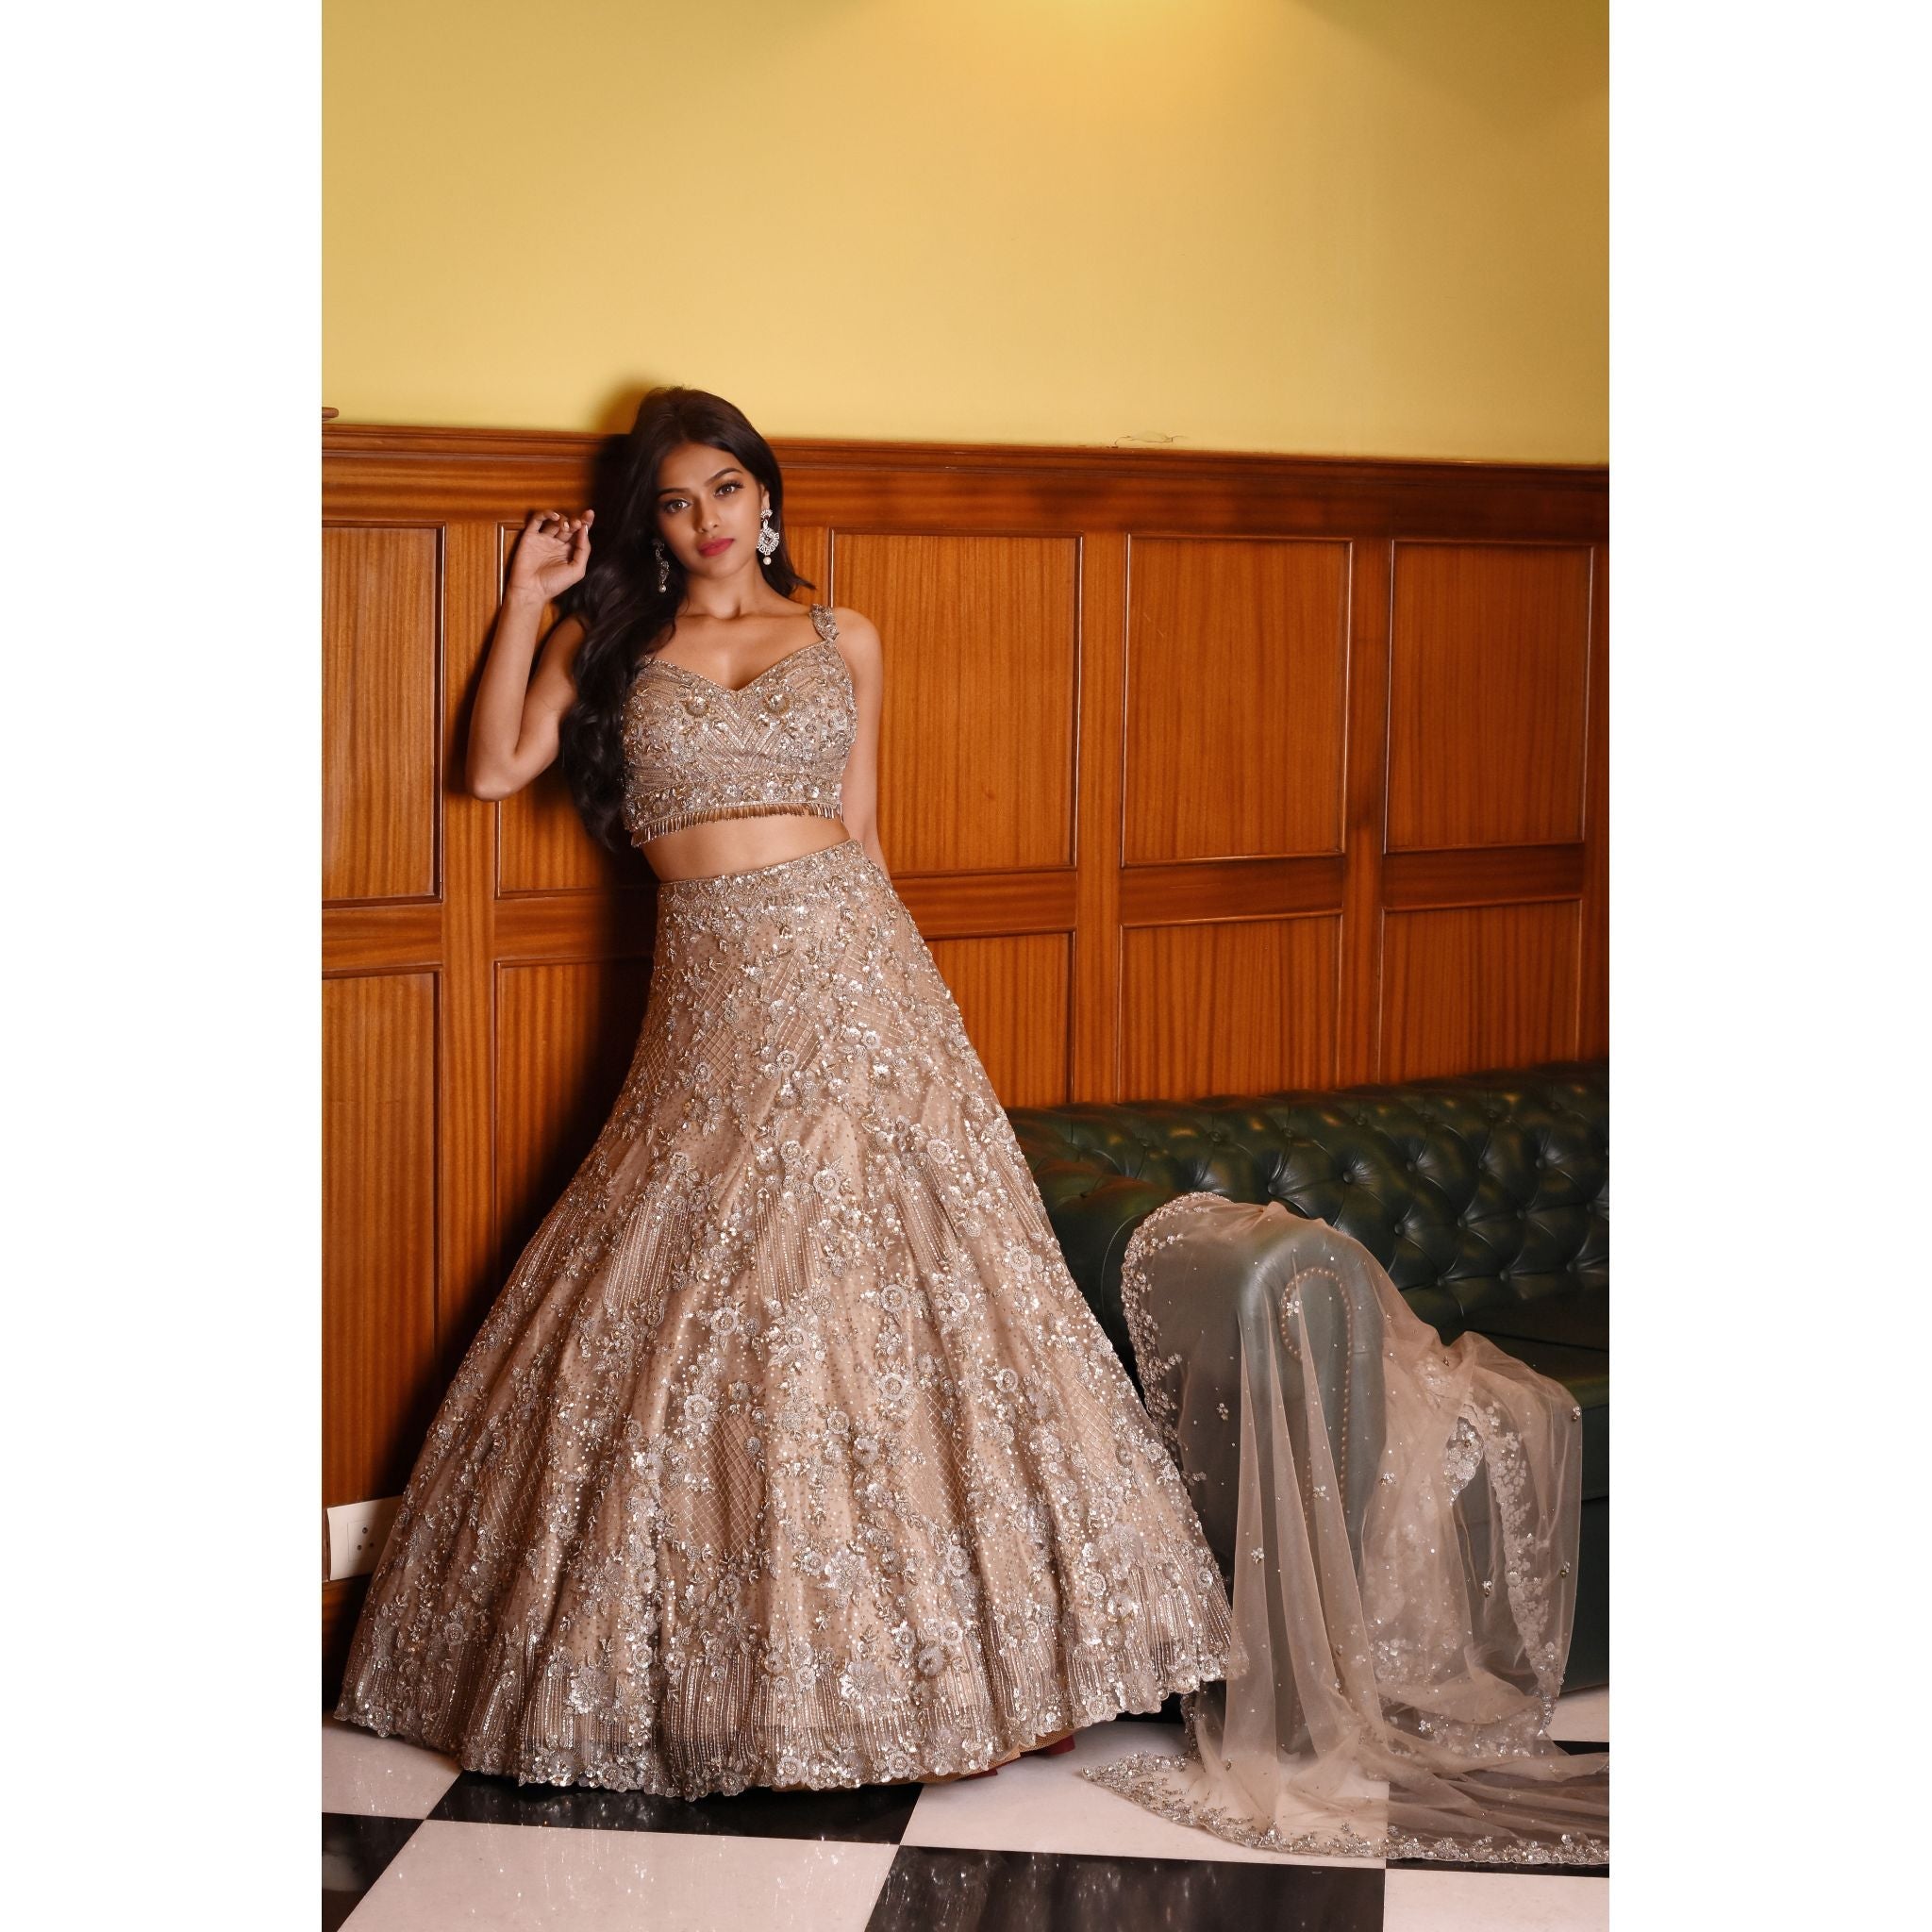 Ash Grey Studded Lehenga Set - Indian Designer Bridal Wedding Outfit